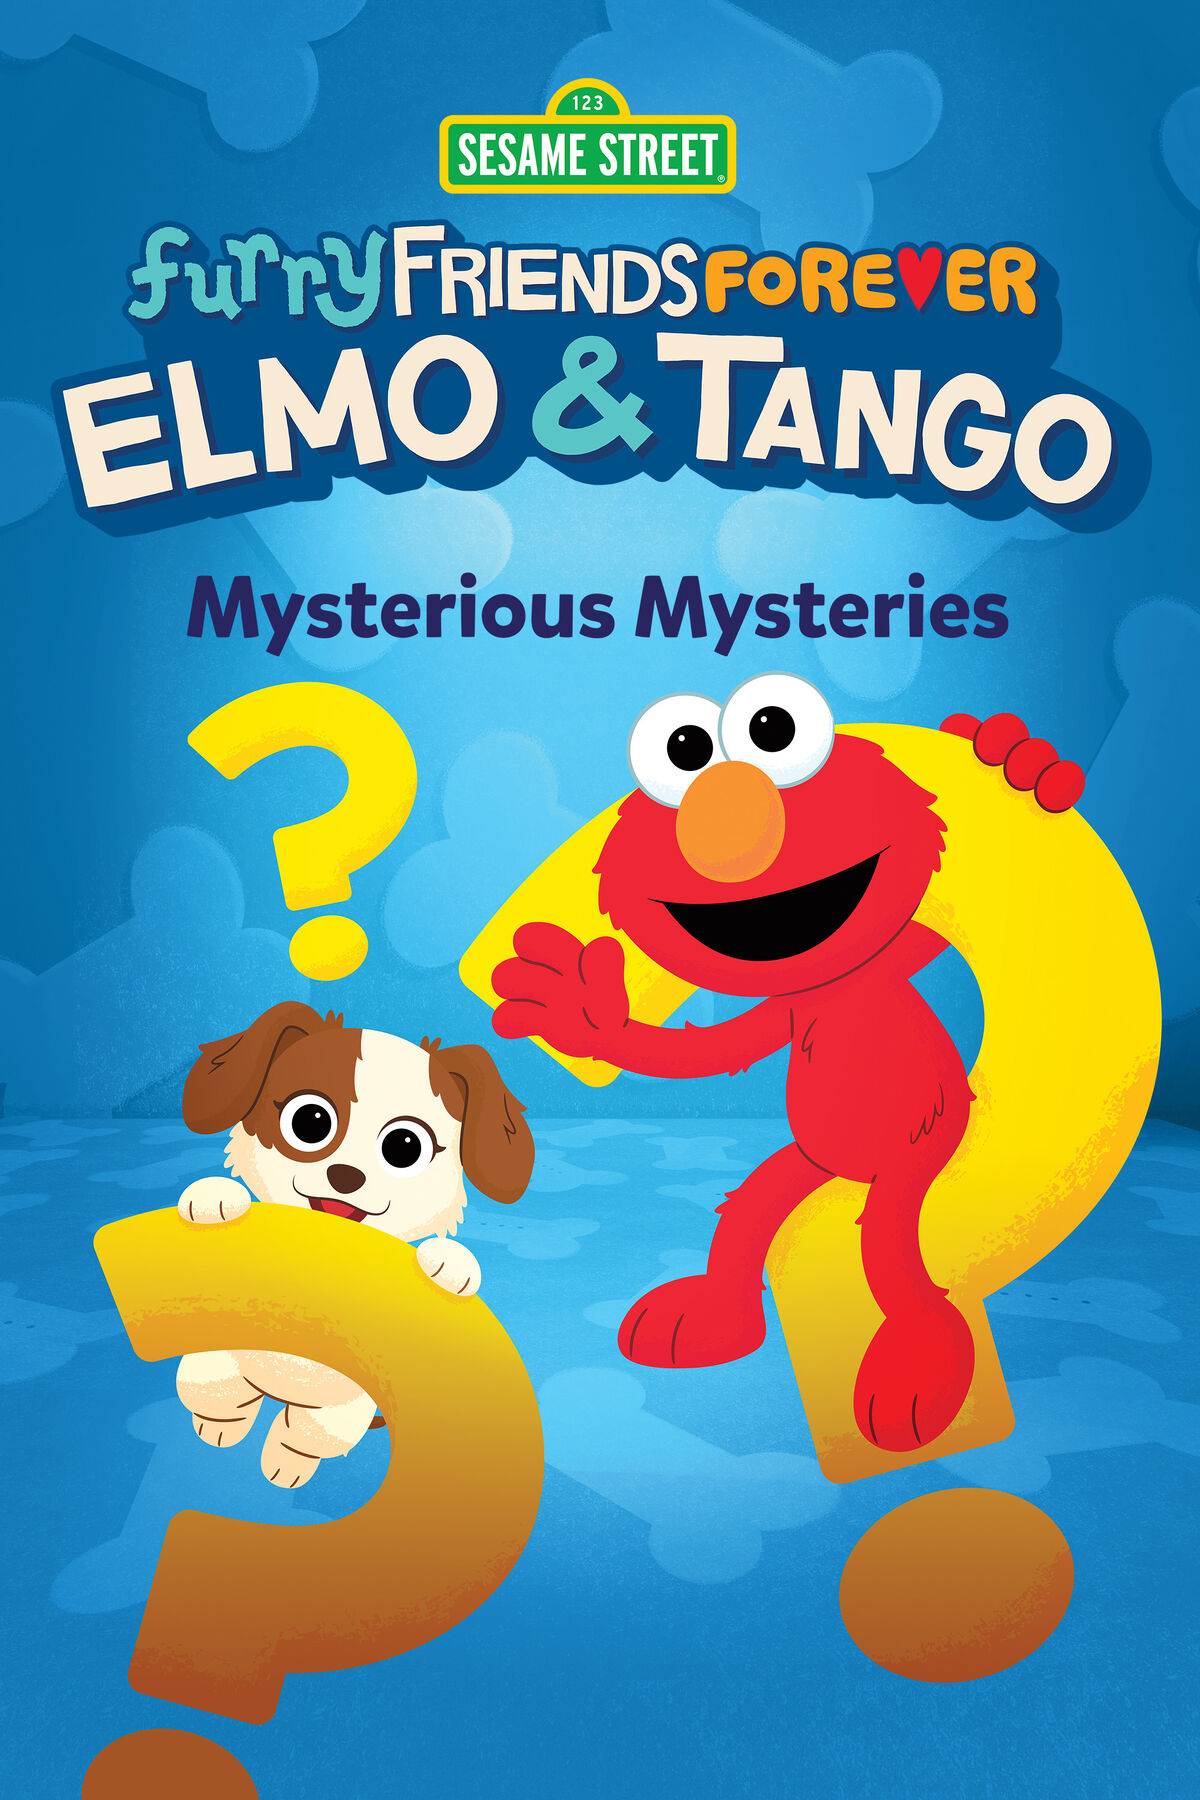 Play with Me Sesame - Series - TV Tango